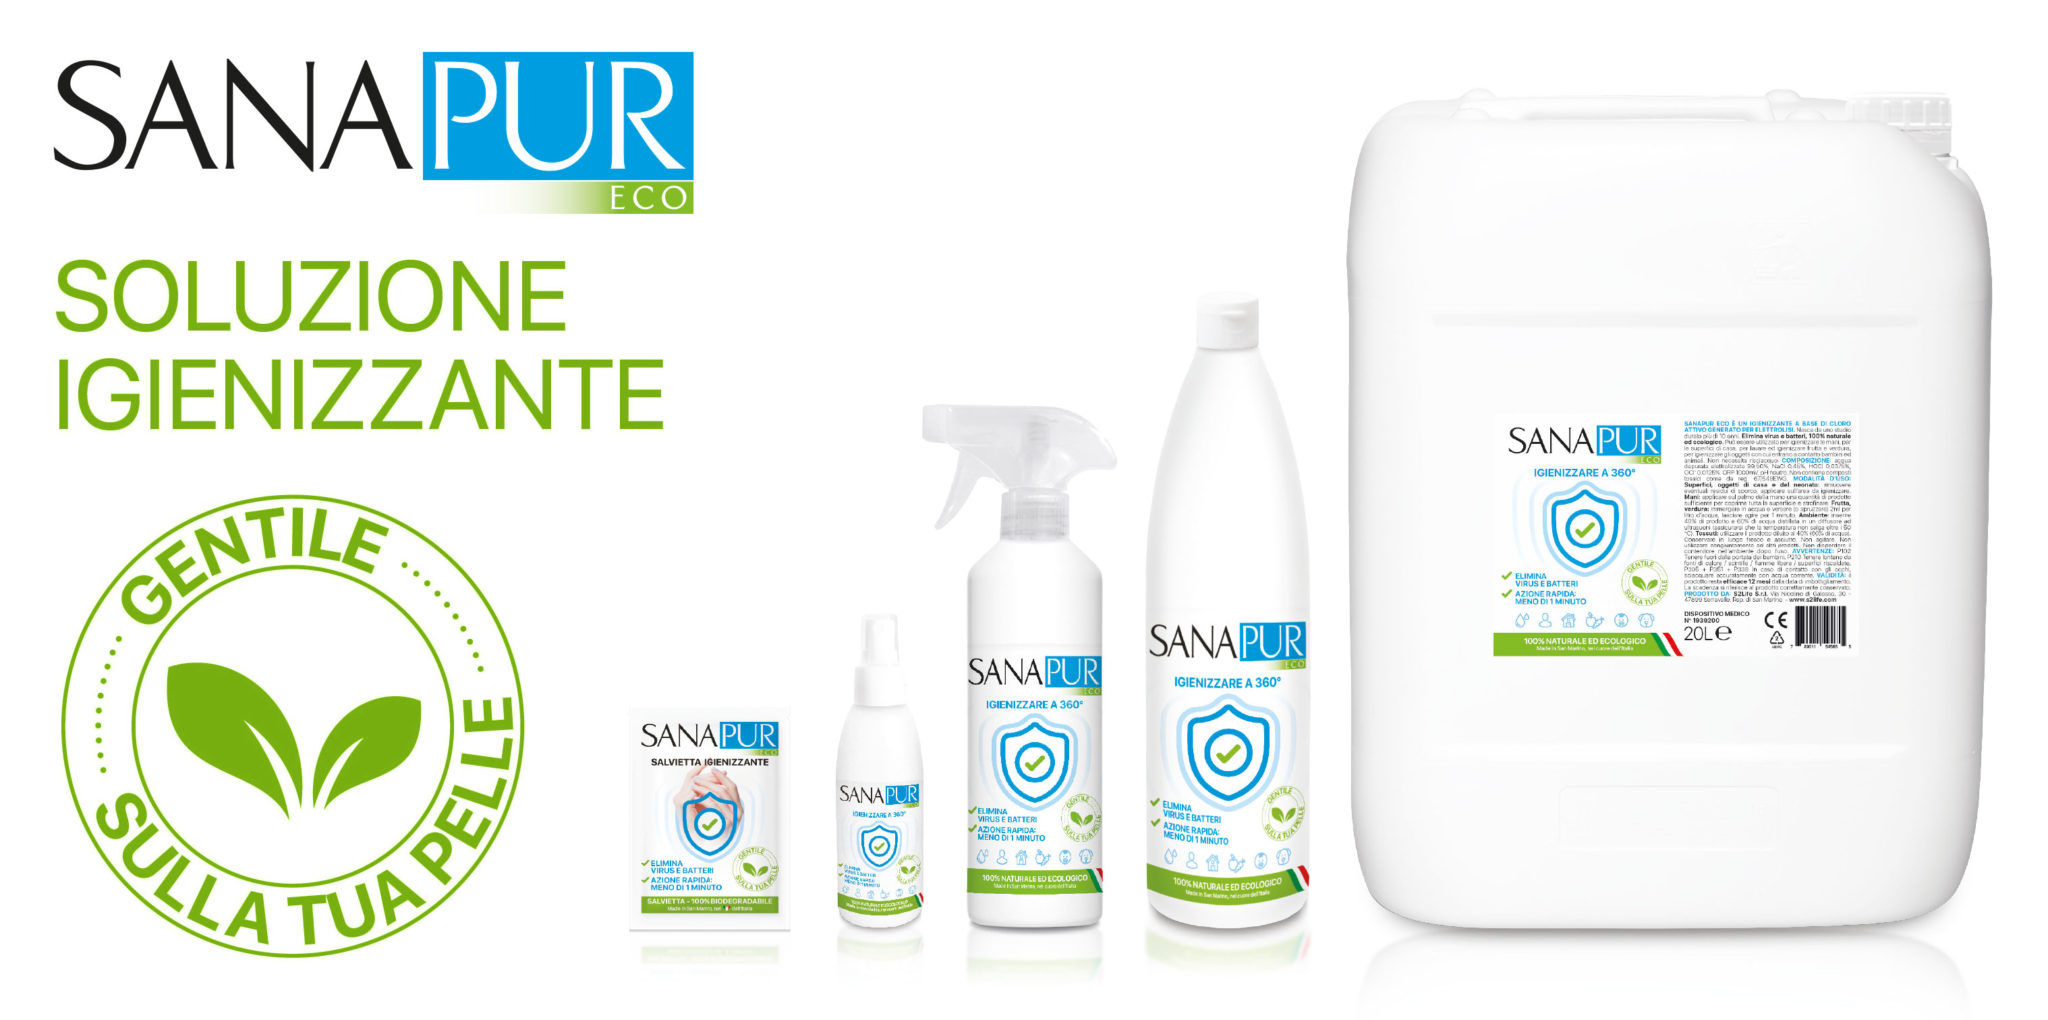 Image of Soluzione Igienizzante Sanapur Eco 500ml